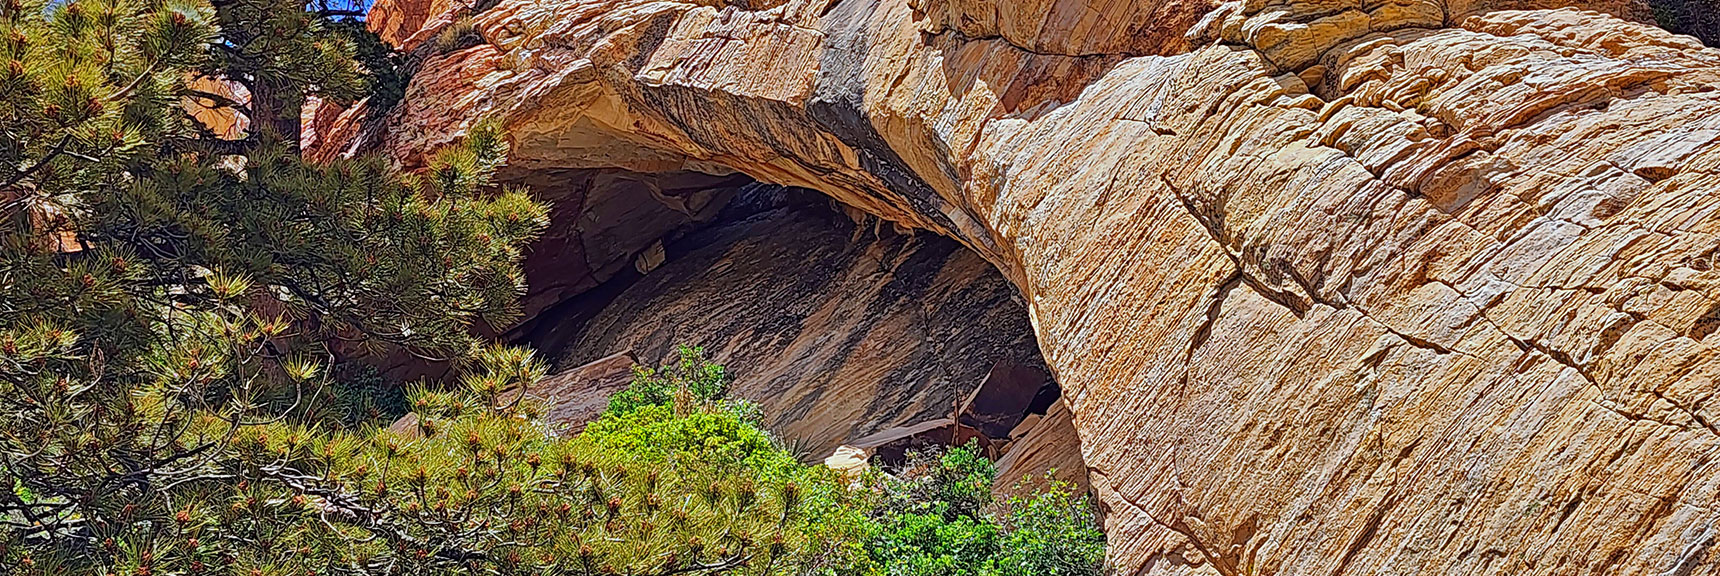 Little Zion Arch Formation | Little Zion | Rainbow Mountain Wilderness, Nevada